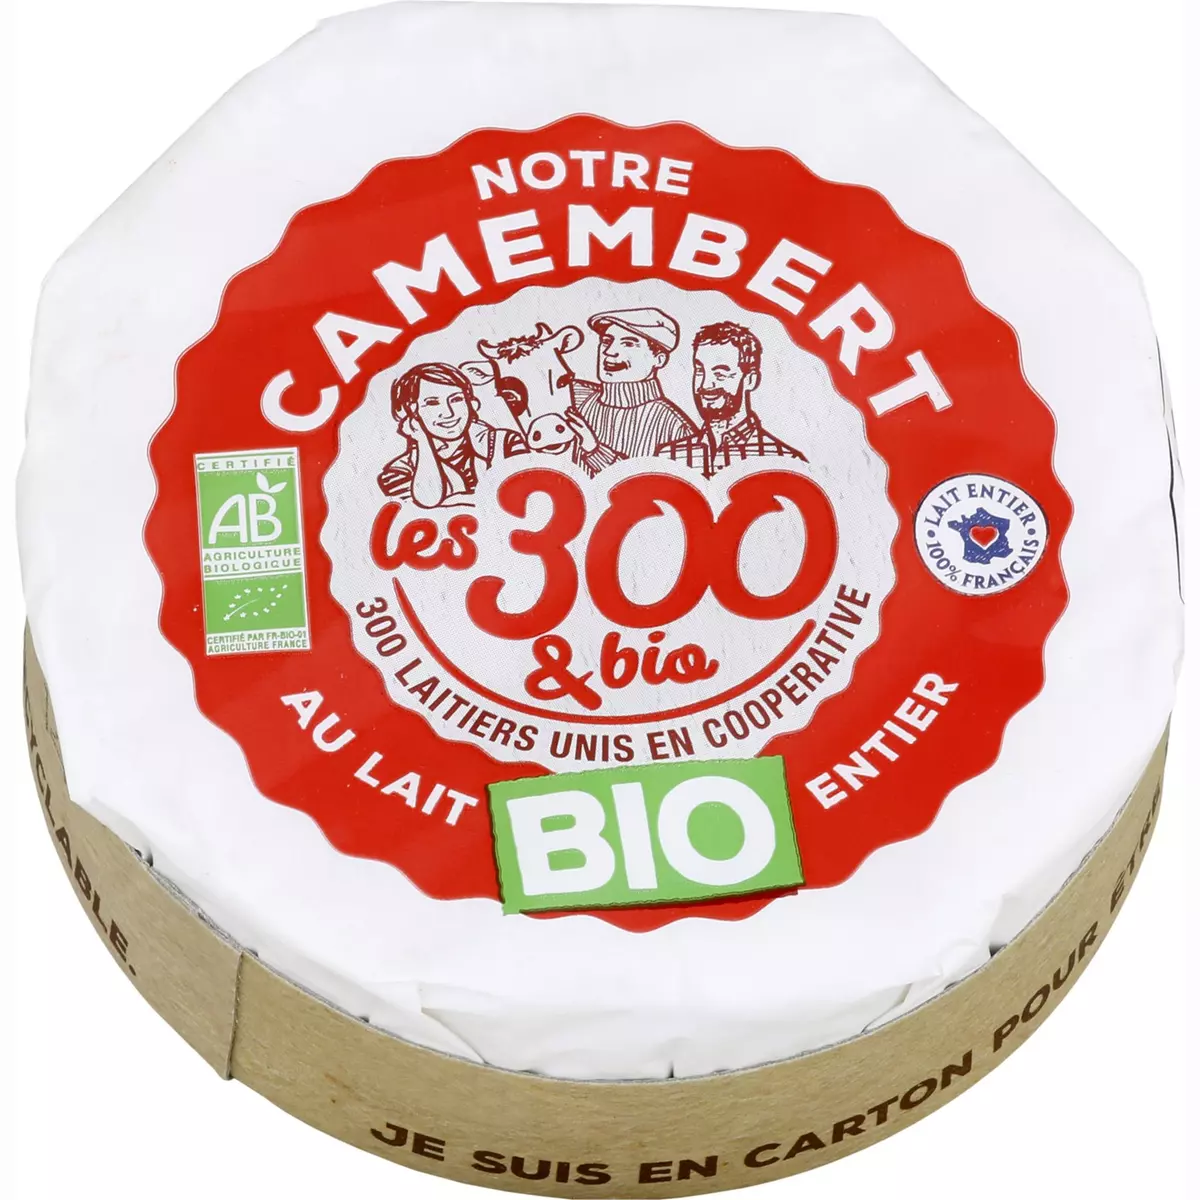 LES 300 LAITIERS BIO Notre Camembert au lait entier bio   250g